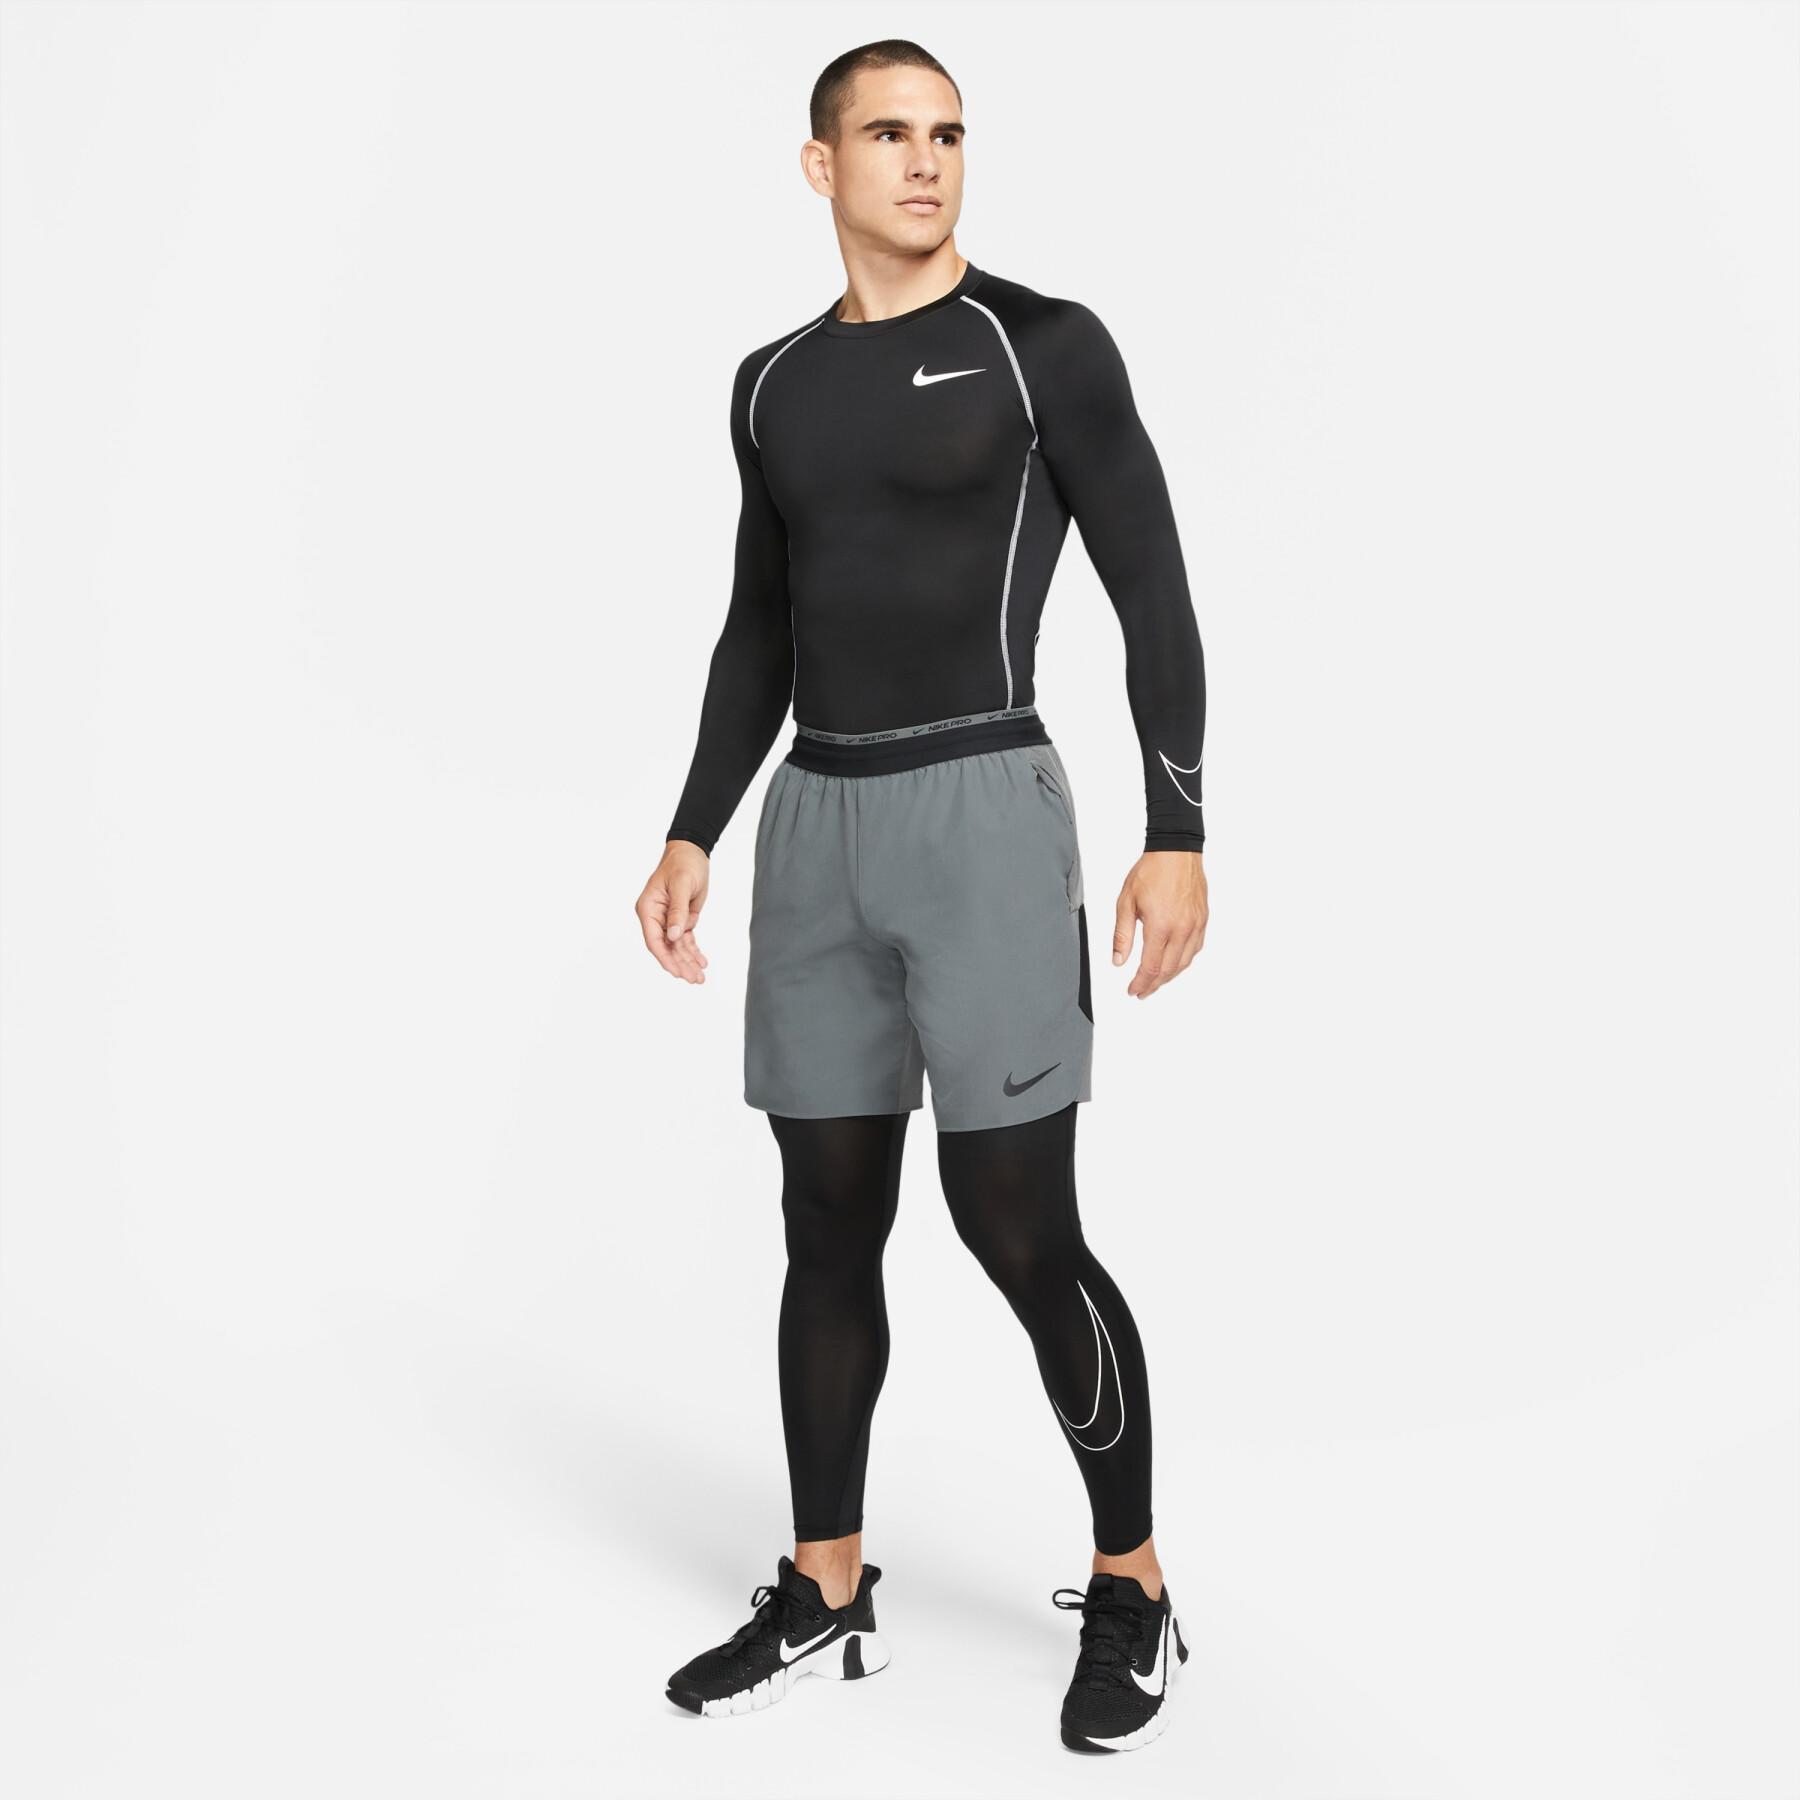 Legging compression Nike Dri-Fit